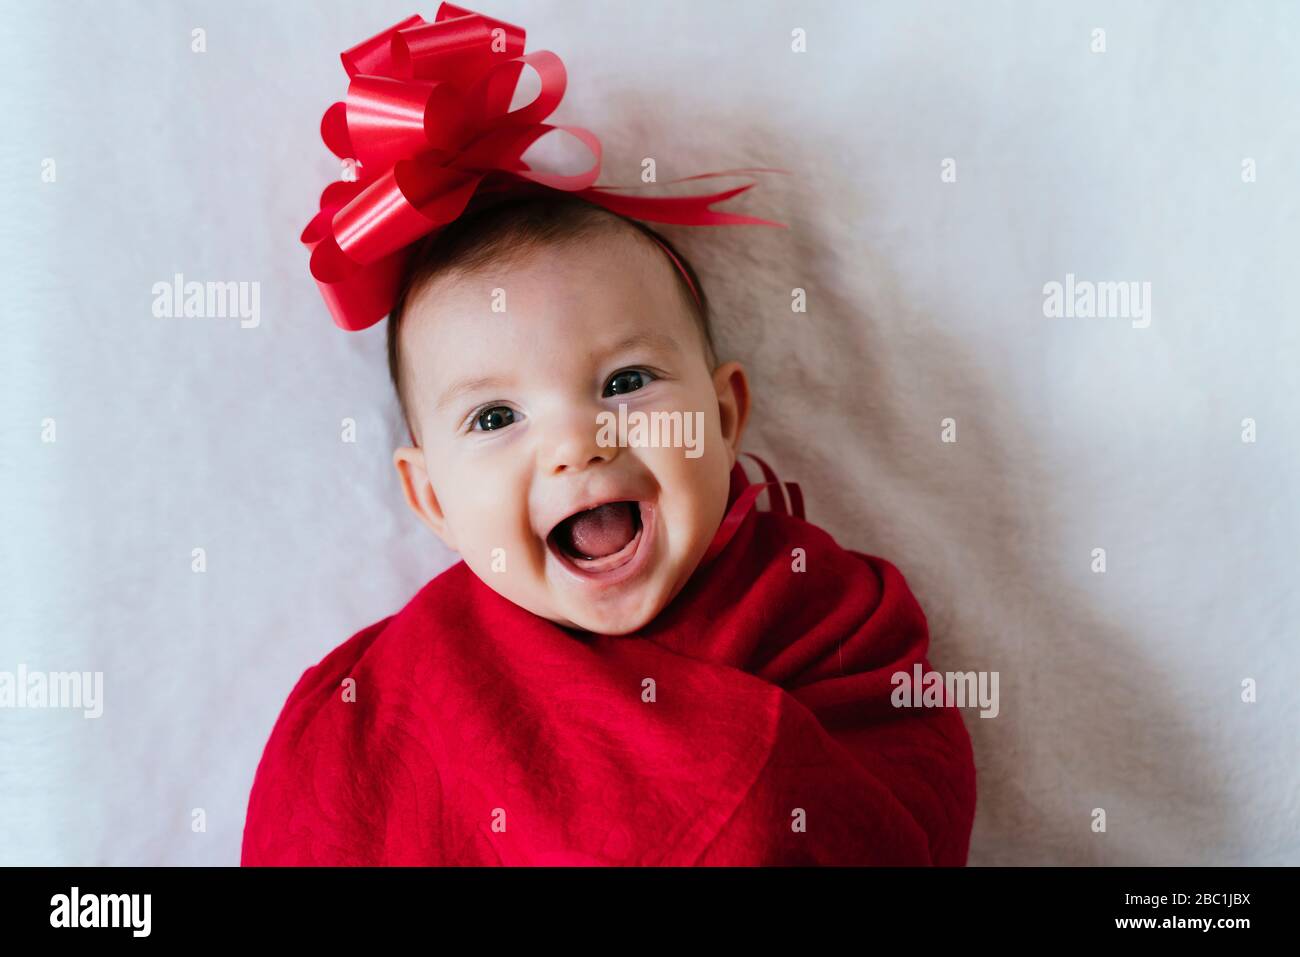 Porträt von glücklichen Mädchen mit rotem Band auf ihrem Kopf in rote Decke gewickelt Stockfoto